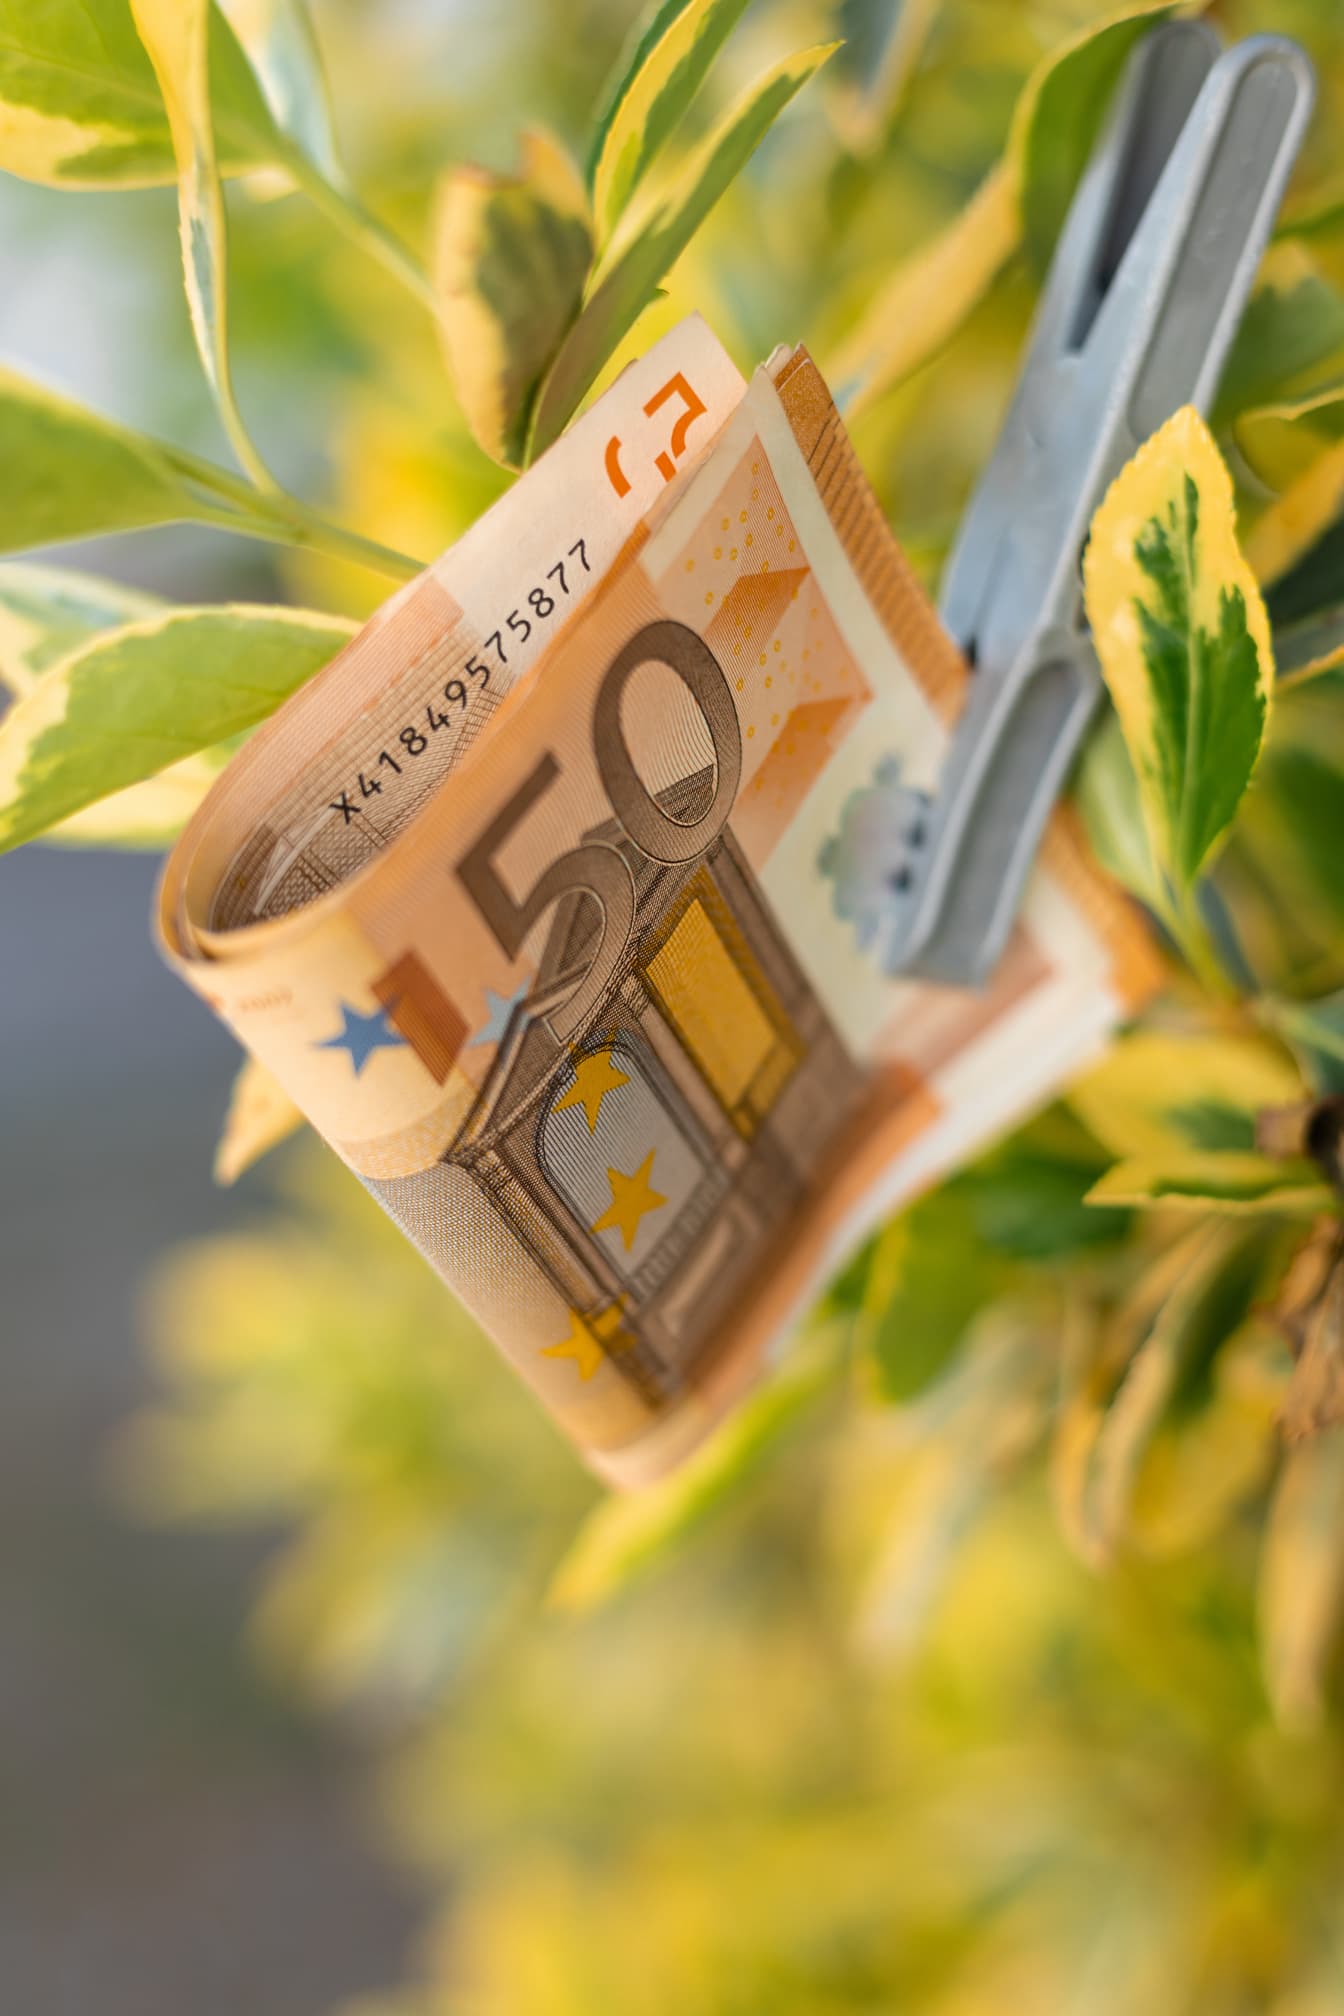 50 євро грошей на зеленувато-жовте листя з пластиковою кліпсою